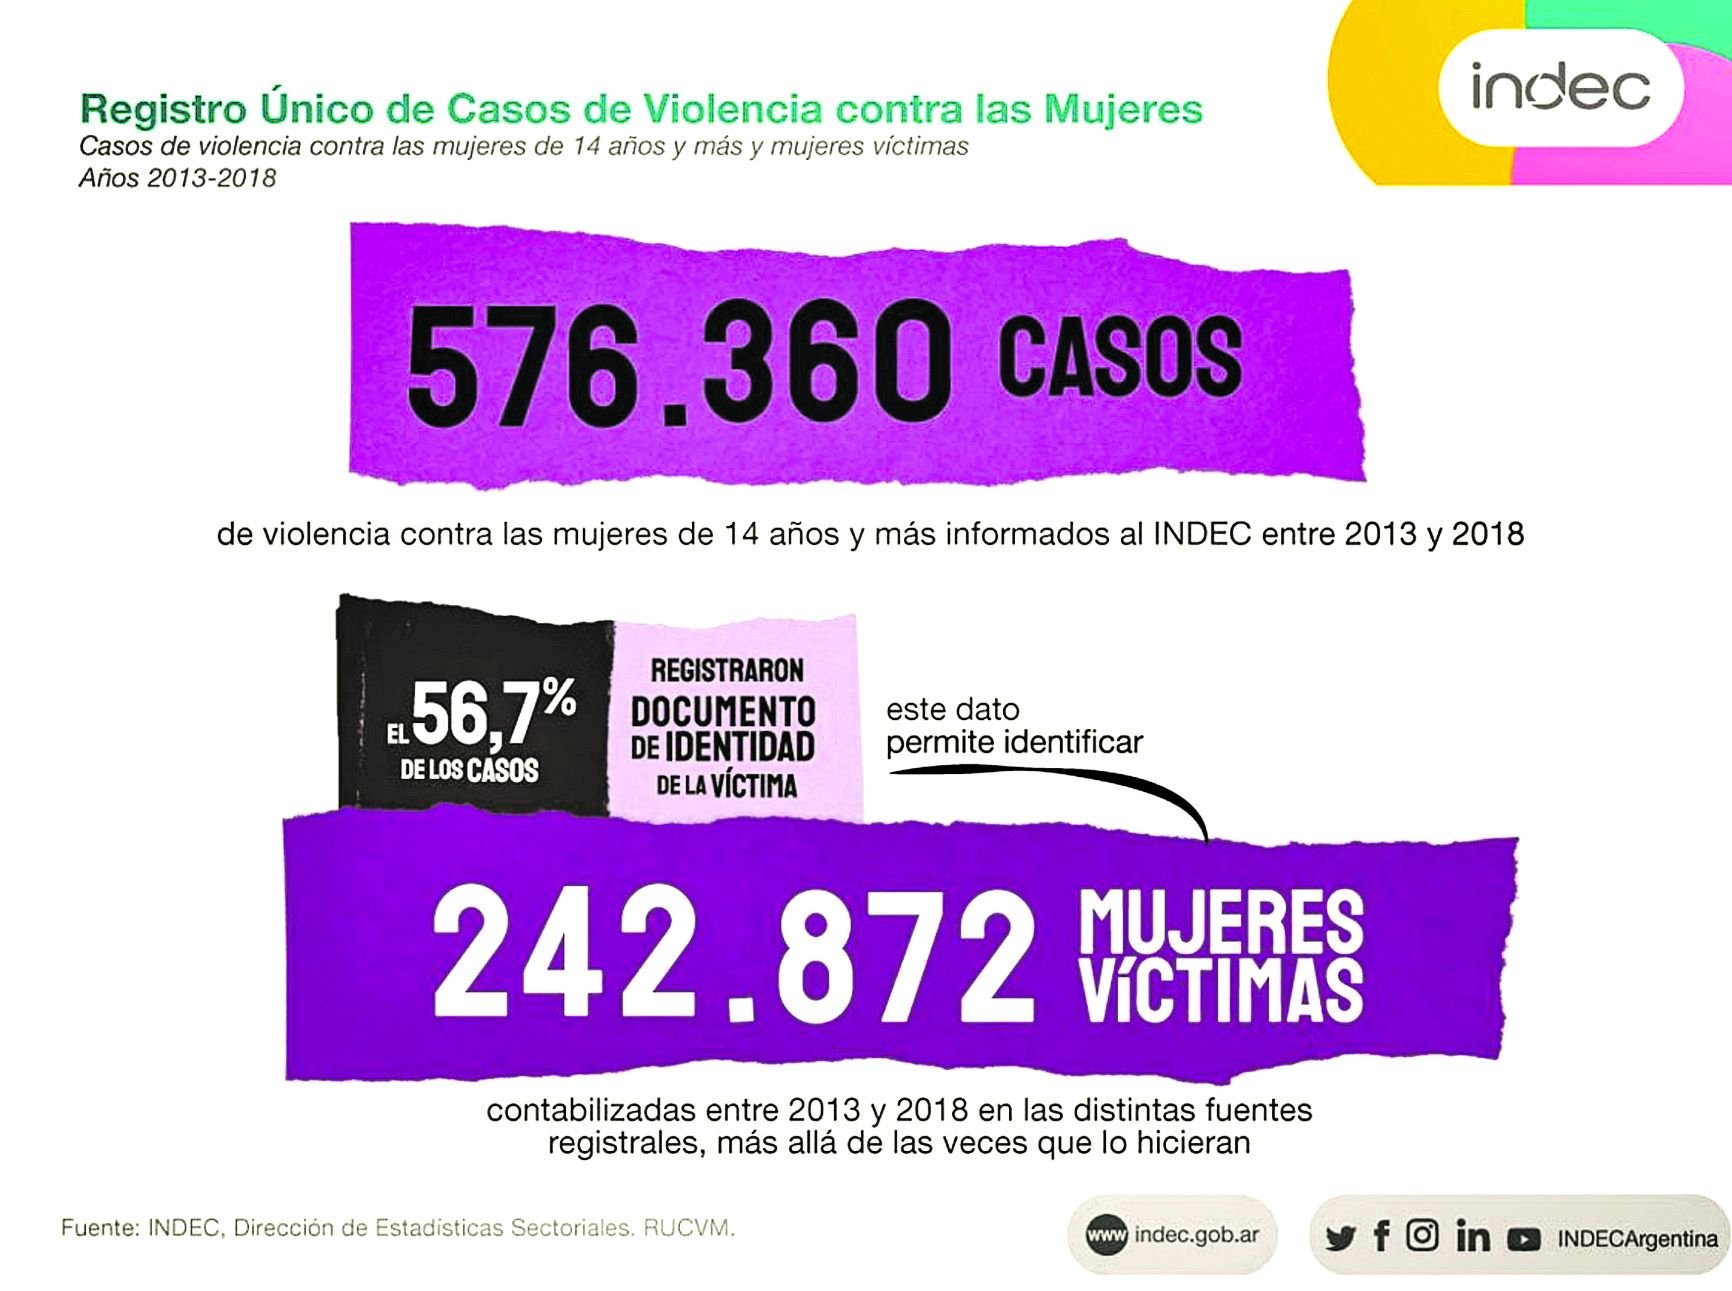 Ms de 570 mil episodios de violencia, denunciados por 240 mil mujeres